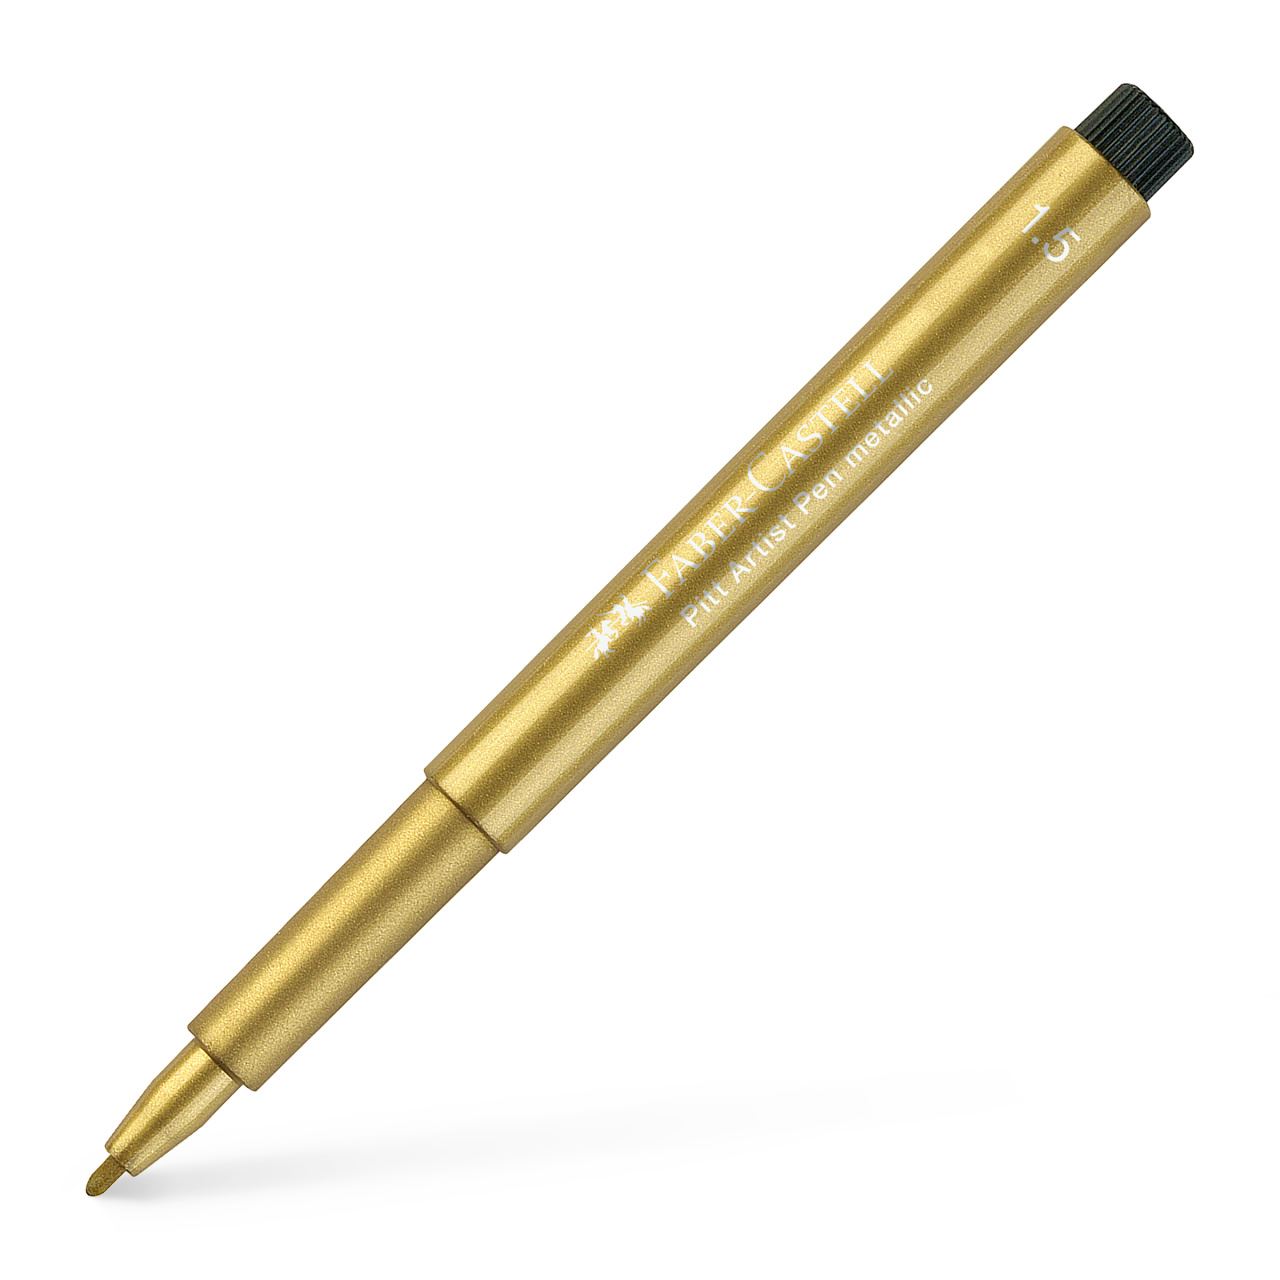 Faber-Castell - Pitt Artist Pen Metallic 1.5 India ink pen, gold